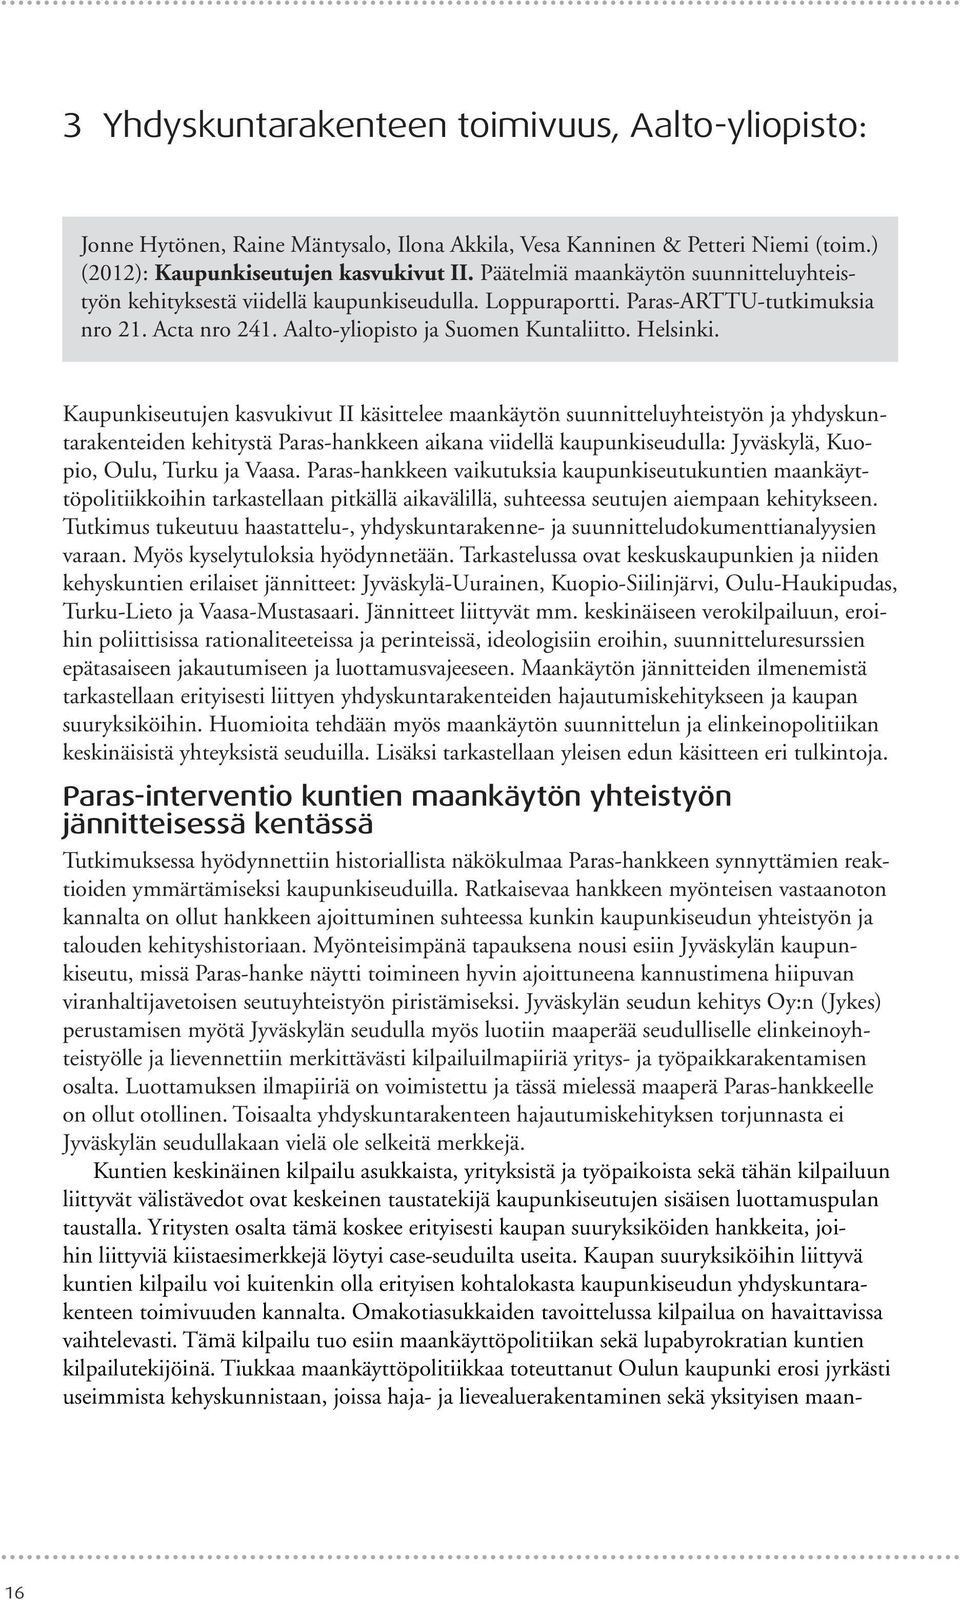 Kaupunkiseutujen kasvukivut II käsittelee maankäytön suunnitteluyhteistyön ja yhdyskuntarakenteiden kehitystä Paras-hankkeen aikana viidellä kaupunkiseudulla: Jyväskylä, Kuopio, Oulu, Turku ja Vaasa.